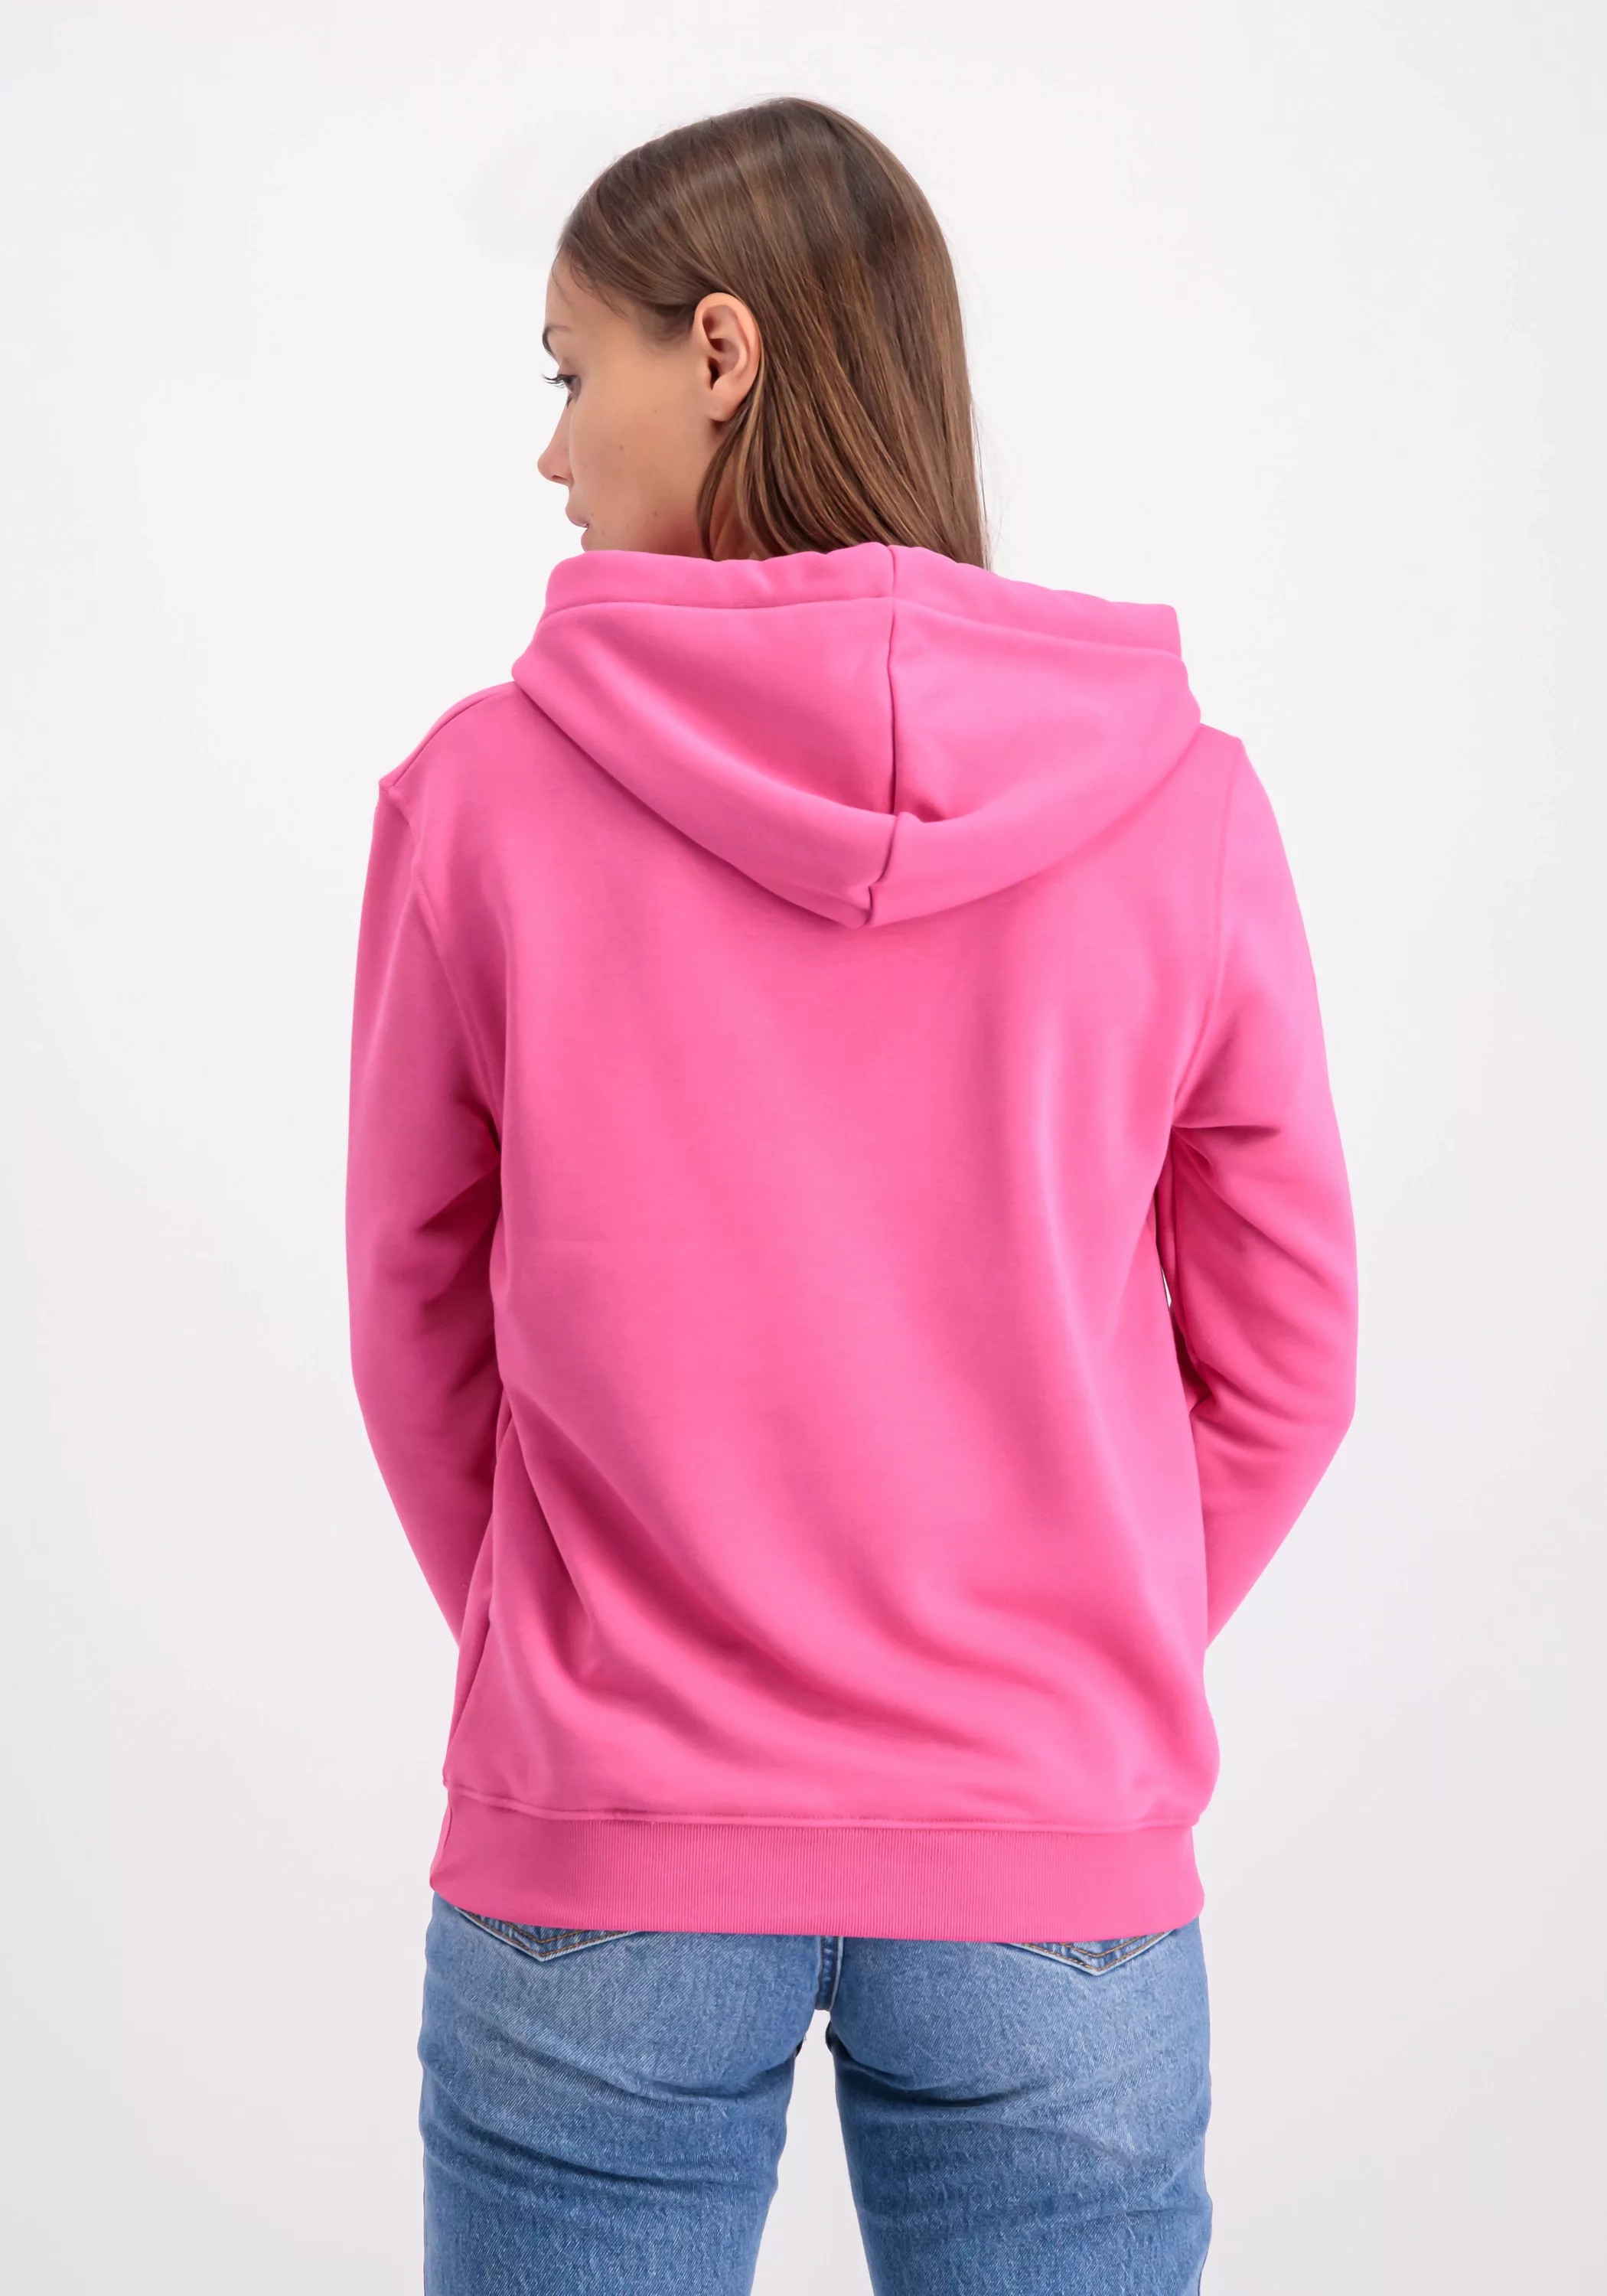 Alpha Industries Sweater "ALPHA INDUSTRIES Women - Sweatshirts New Basic Sw günstig online kaufen